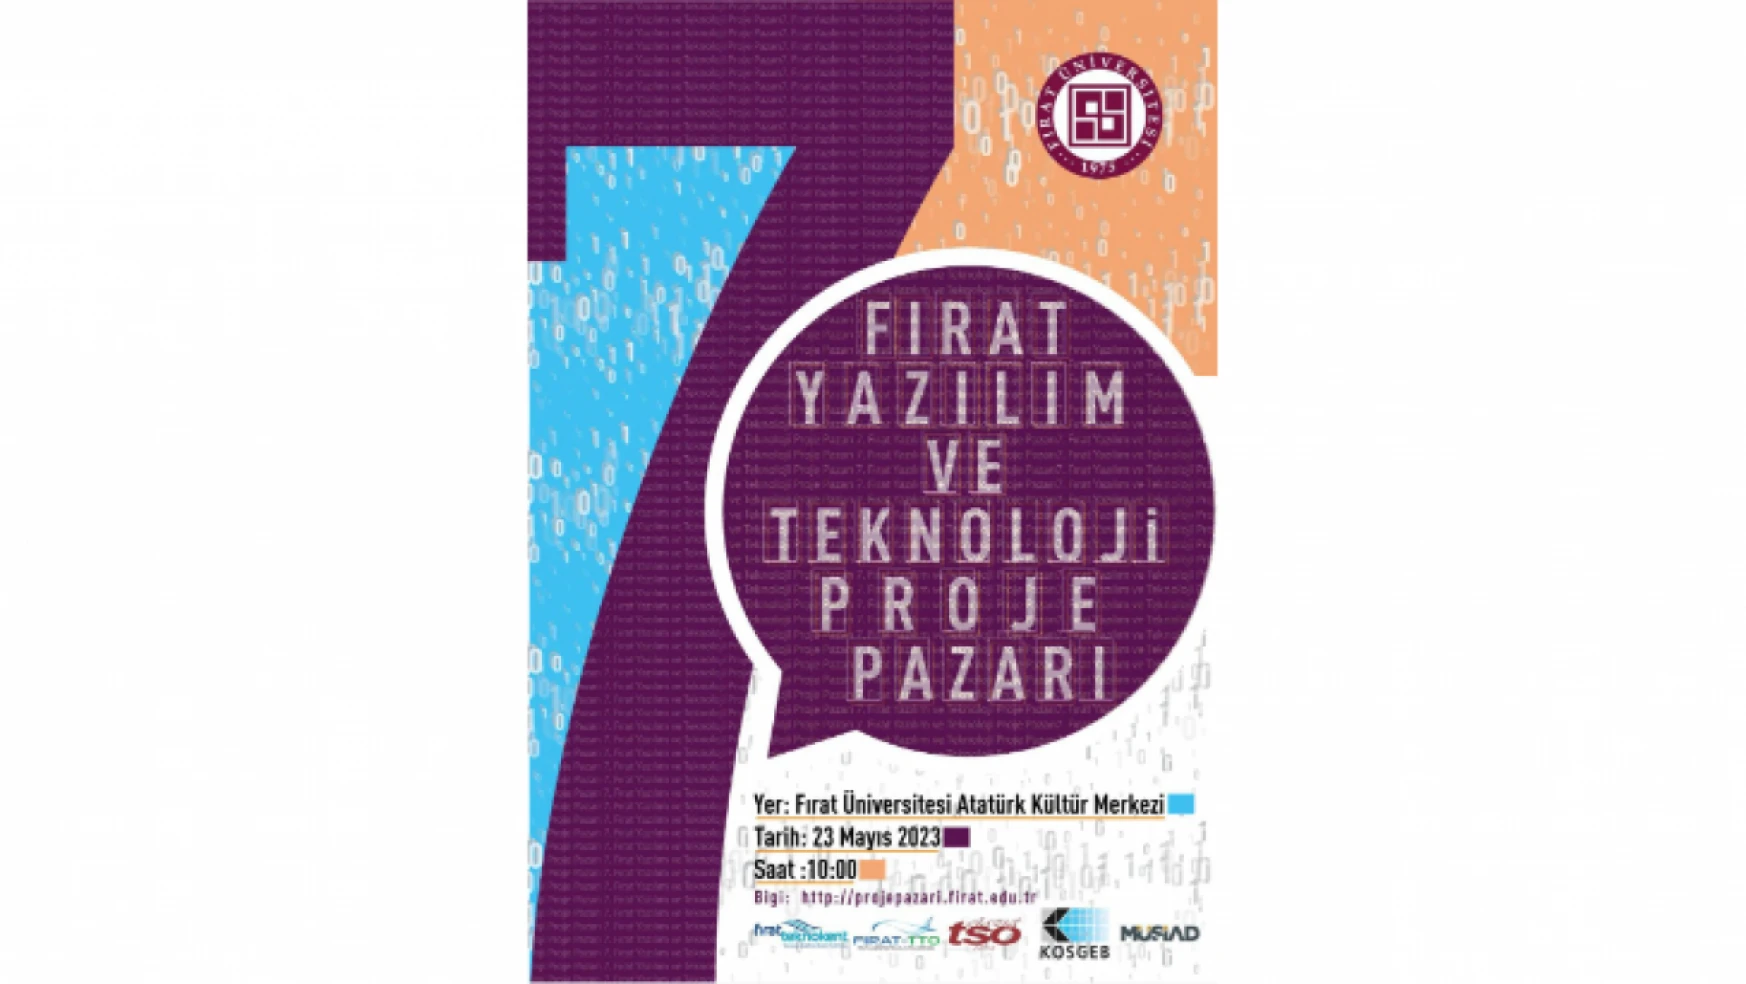 Fırat Üniversitesi'nde 7. Fırat Yazılım Ve Teknoloji Proje Pazarı Düzenlenecek